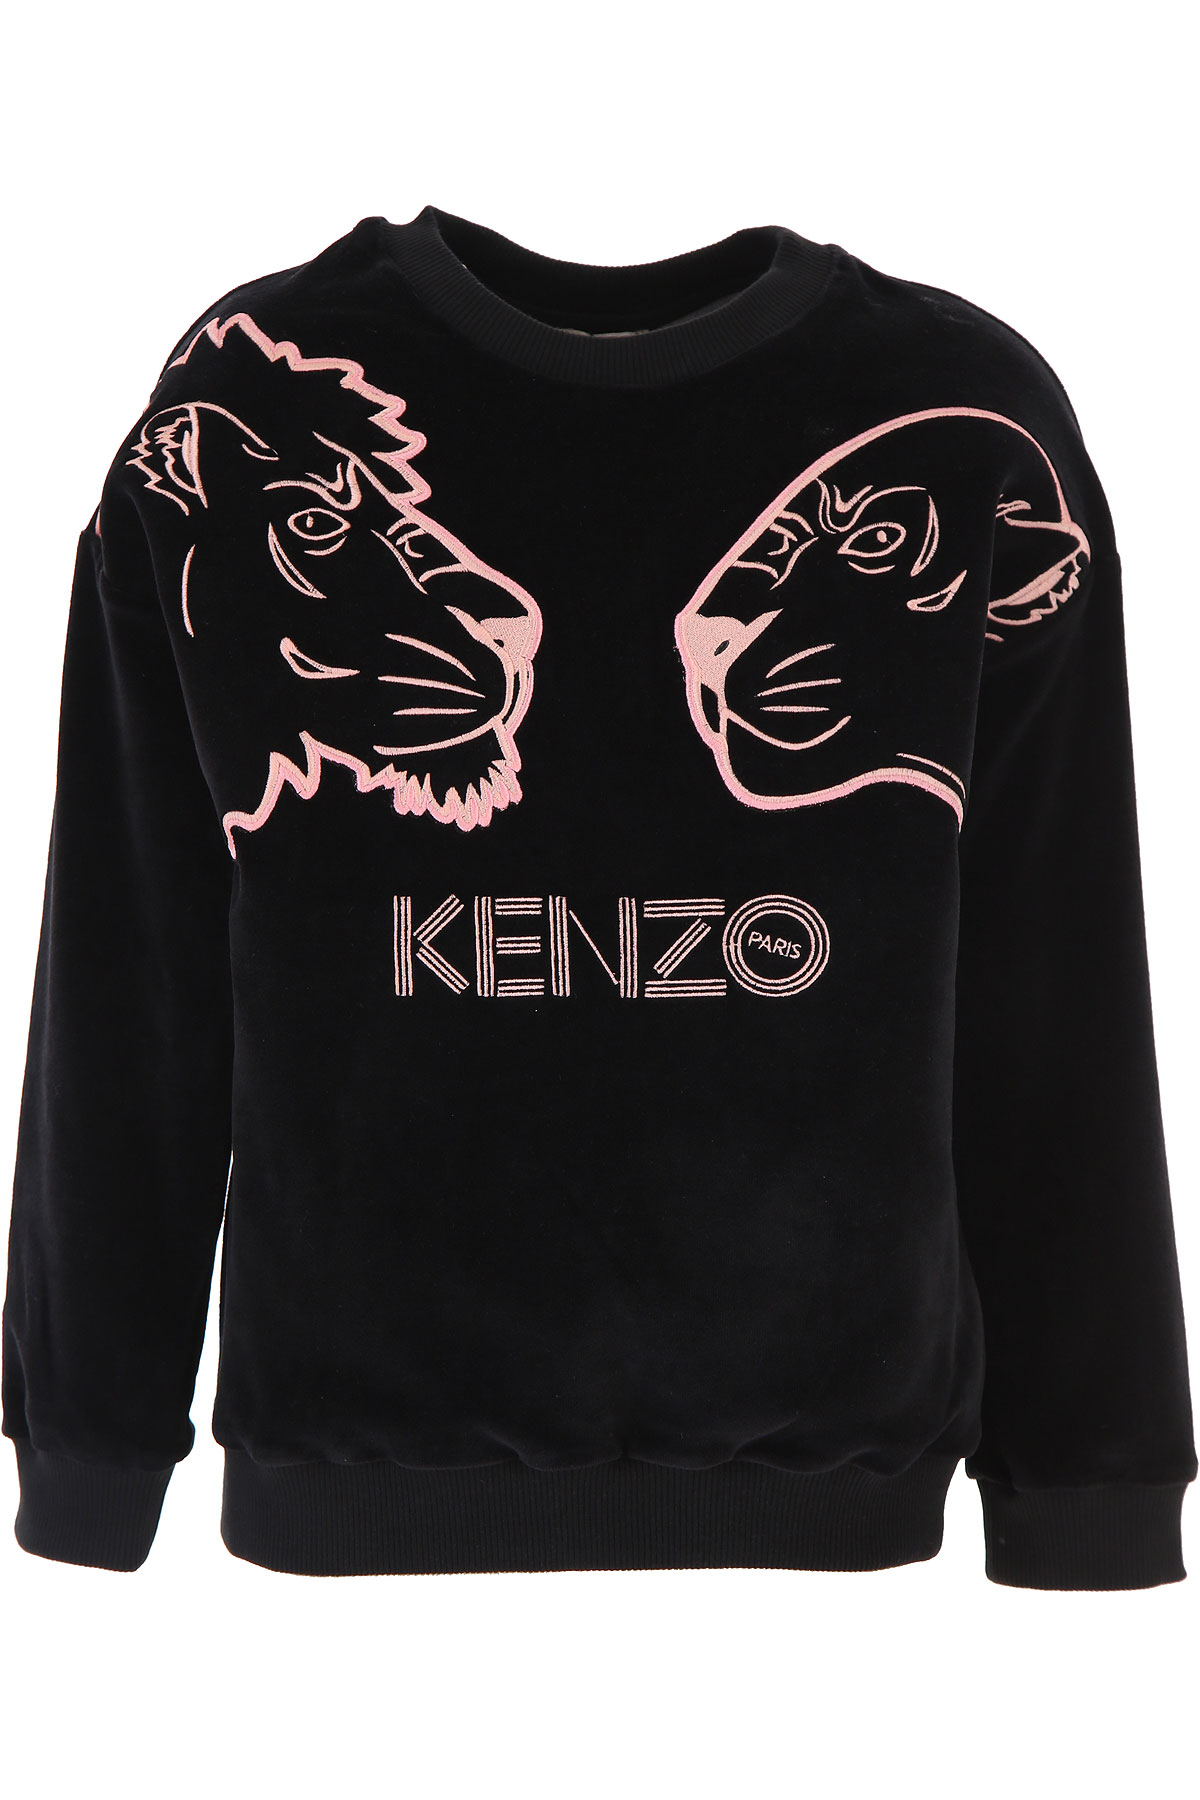 Kenzo Kinder Sweatshirt & Kapuzenpullover für Mädchen Günstig im Sale, Schwarz, Baumwolle, 2017, 10Y 12Y 14Y 2Y 3Y 4Y 6Y 8Y